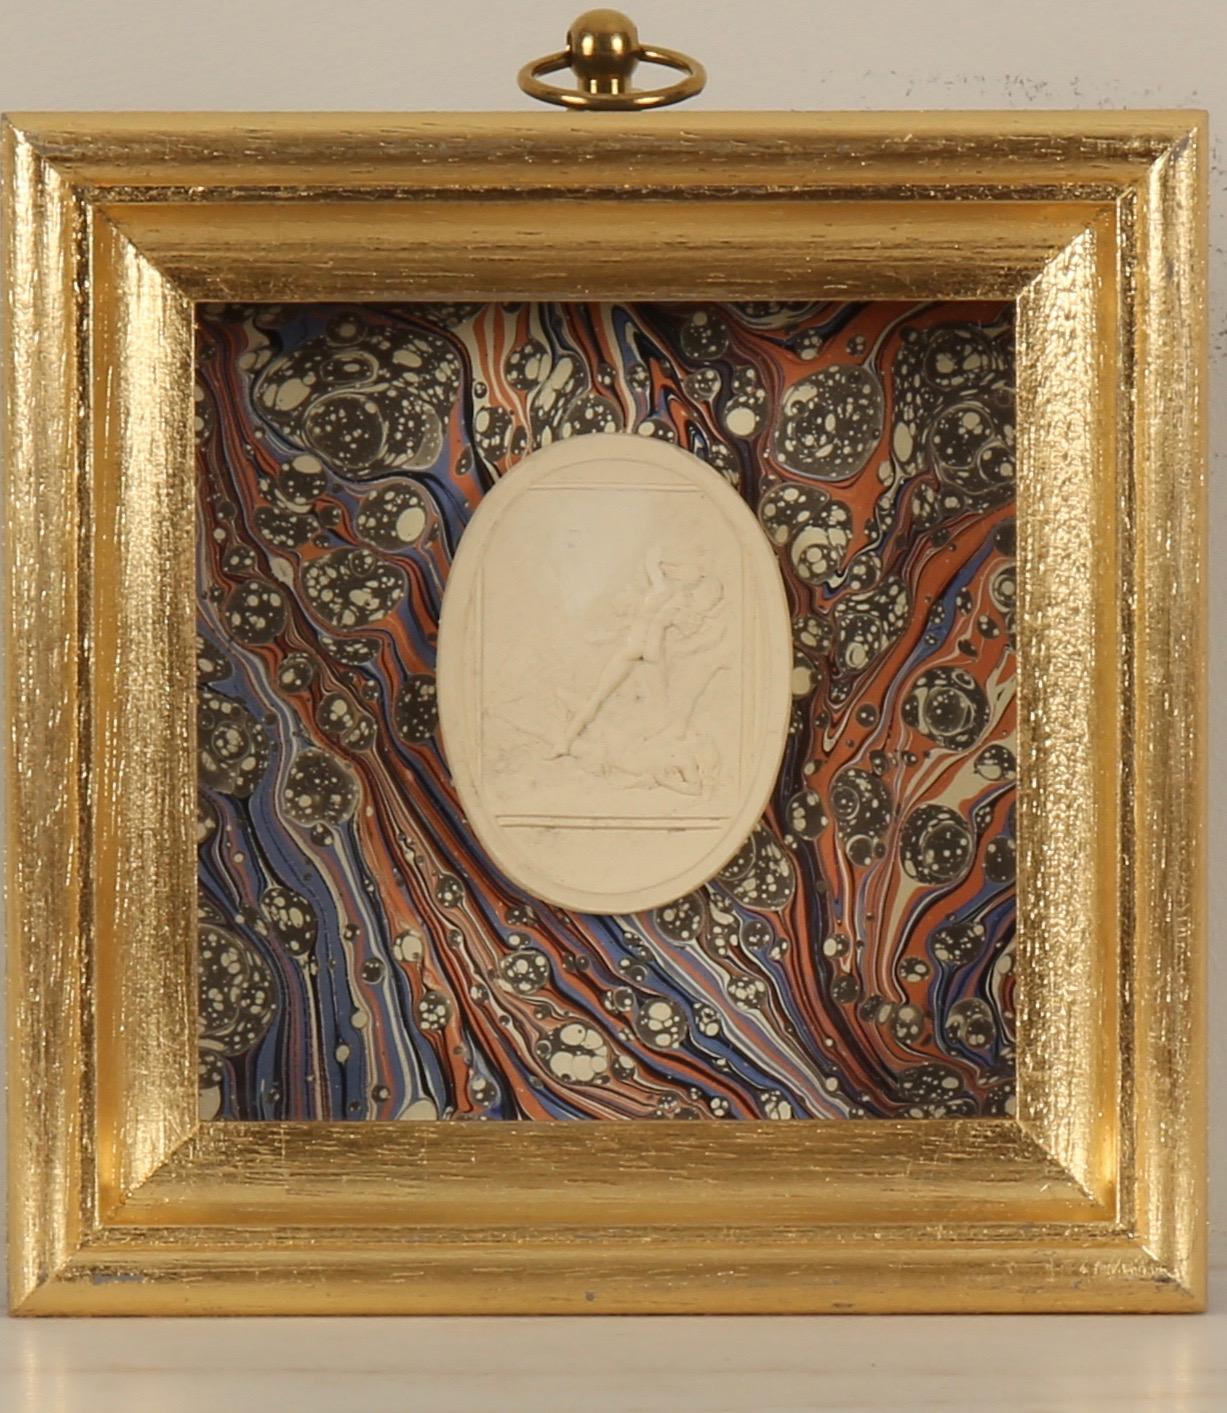 Paoletti Impronte, ‘Mussei Diversi’, Rome c1800. Grand Tour intaglio seal. - Print by  Bartolomeo Paoletti